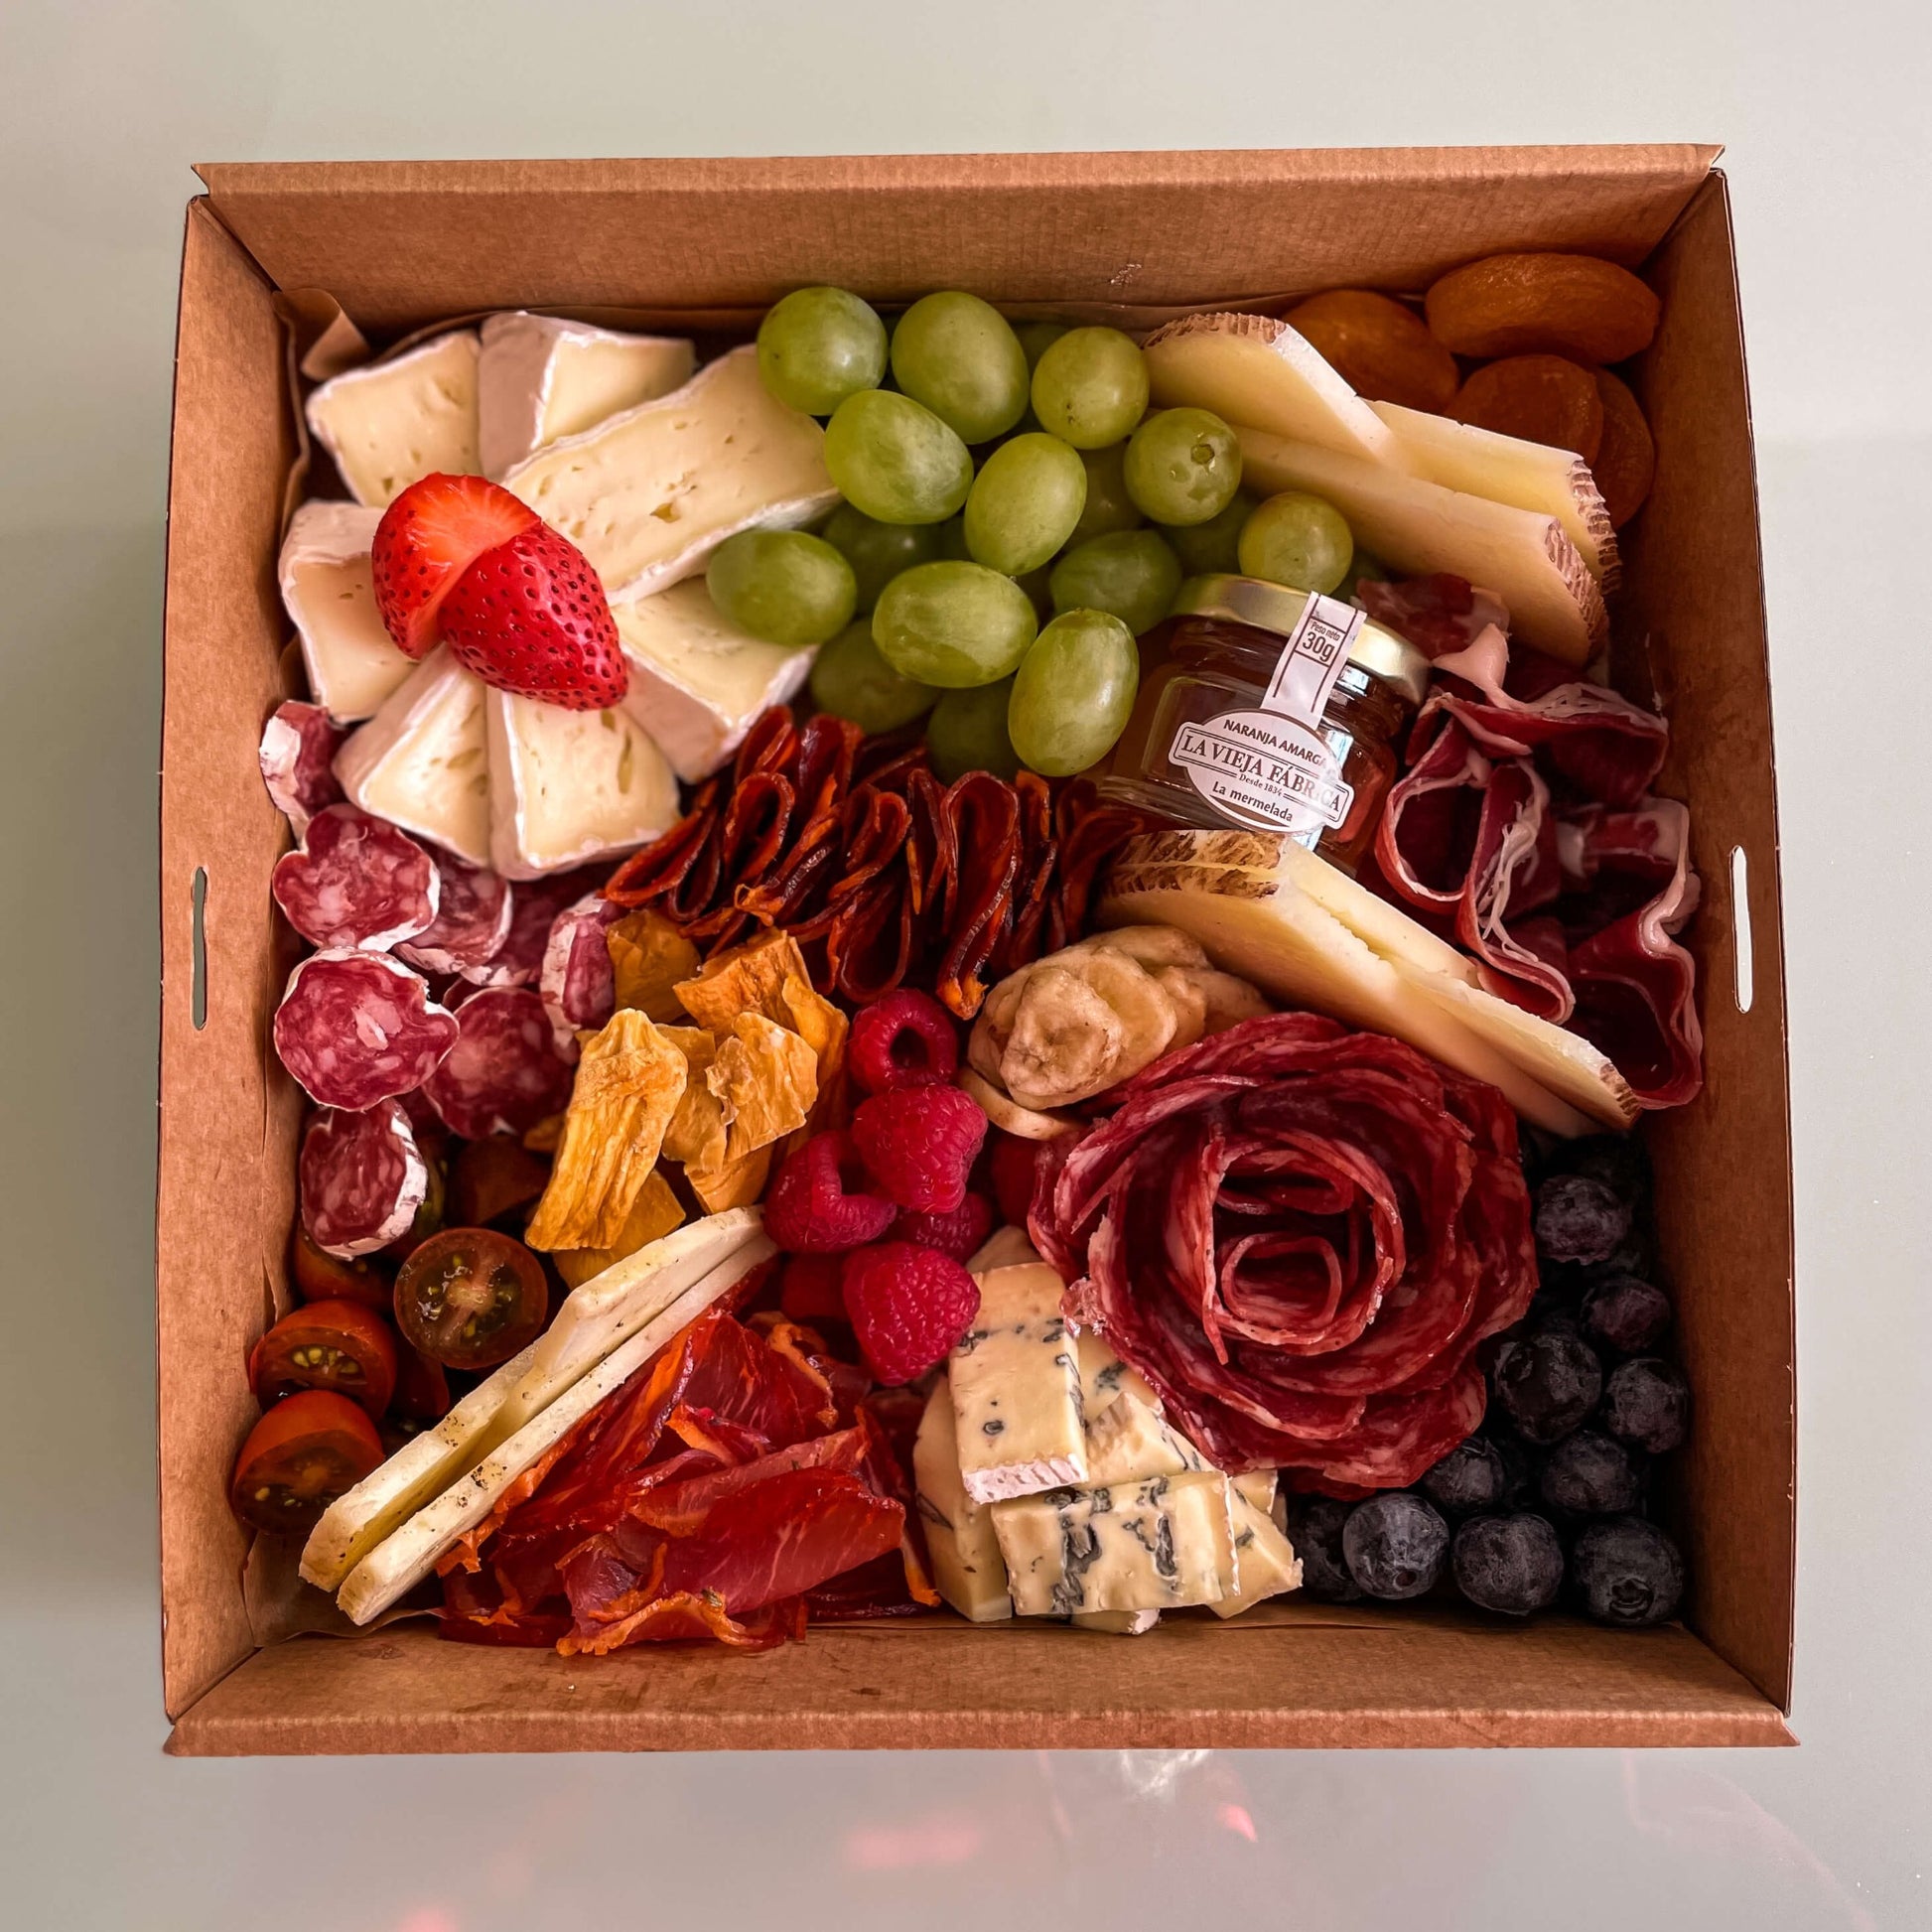 tabla de quesos y embutido para cenar citas aniversario en madrid queso manchego uvas y vegano